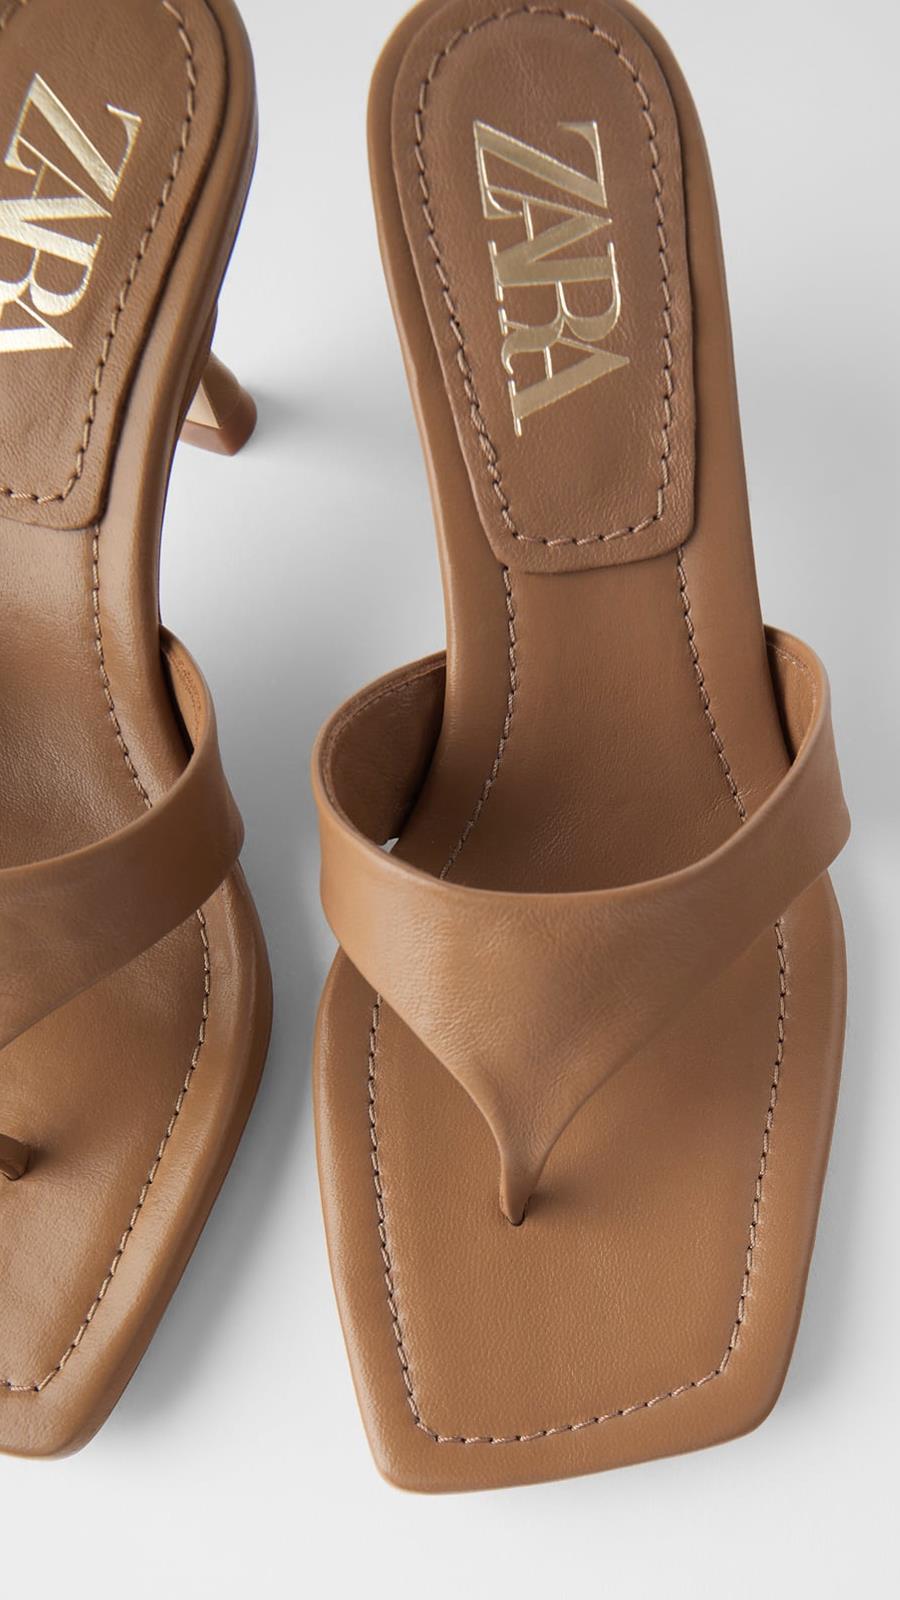 Experto cuenta fibra Los zapatos de moda del verano 2020 ya están en las tiendas